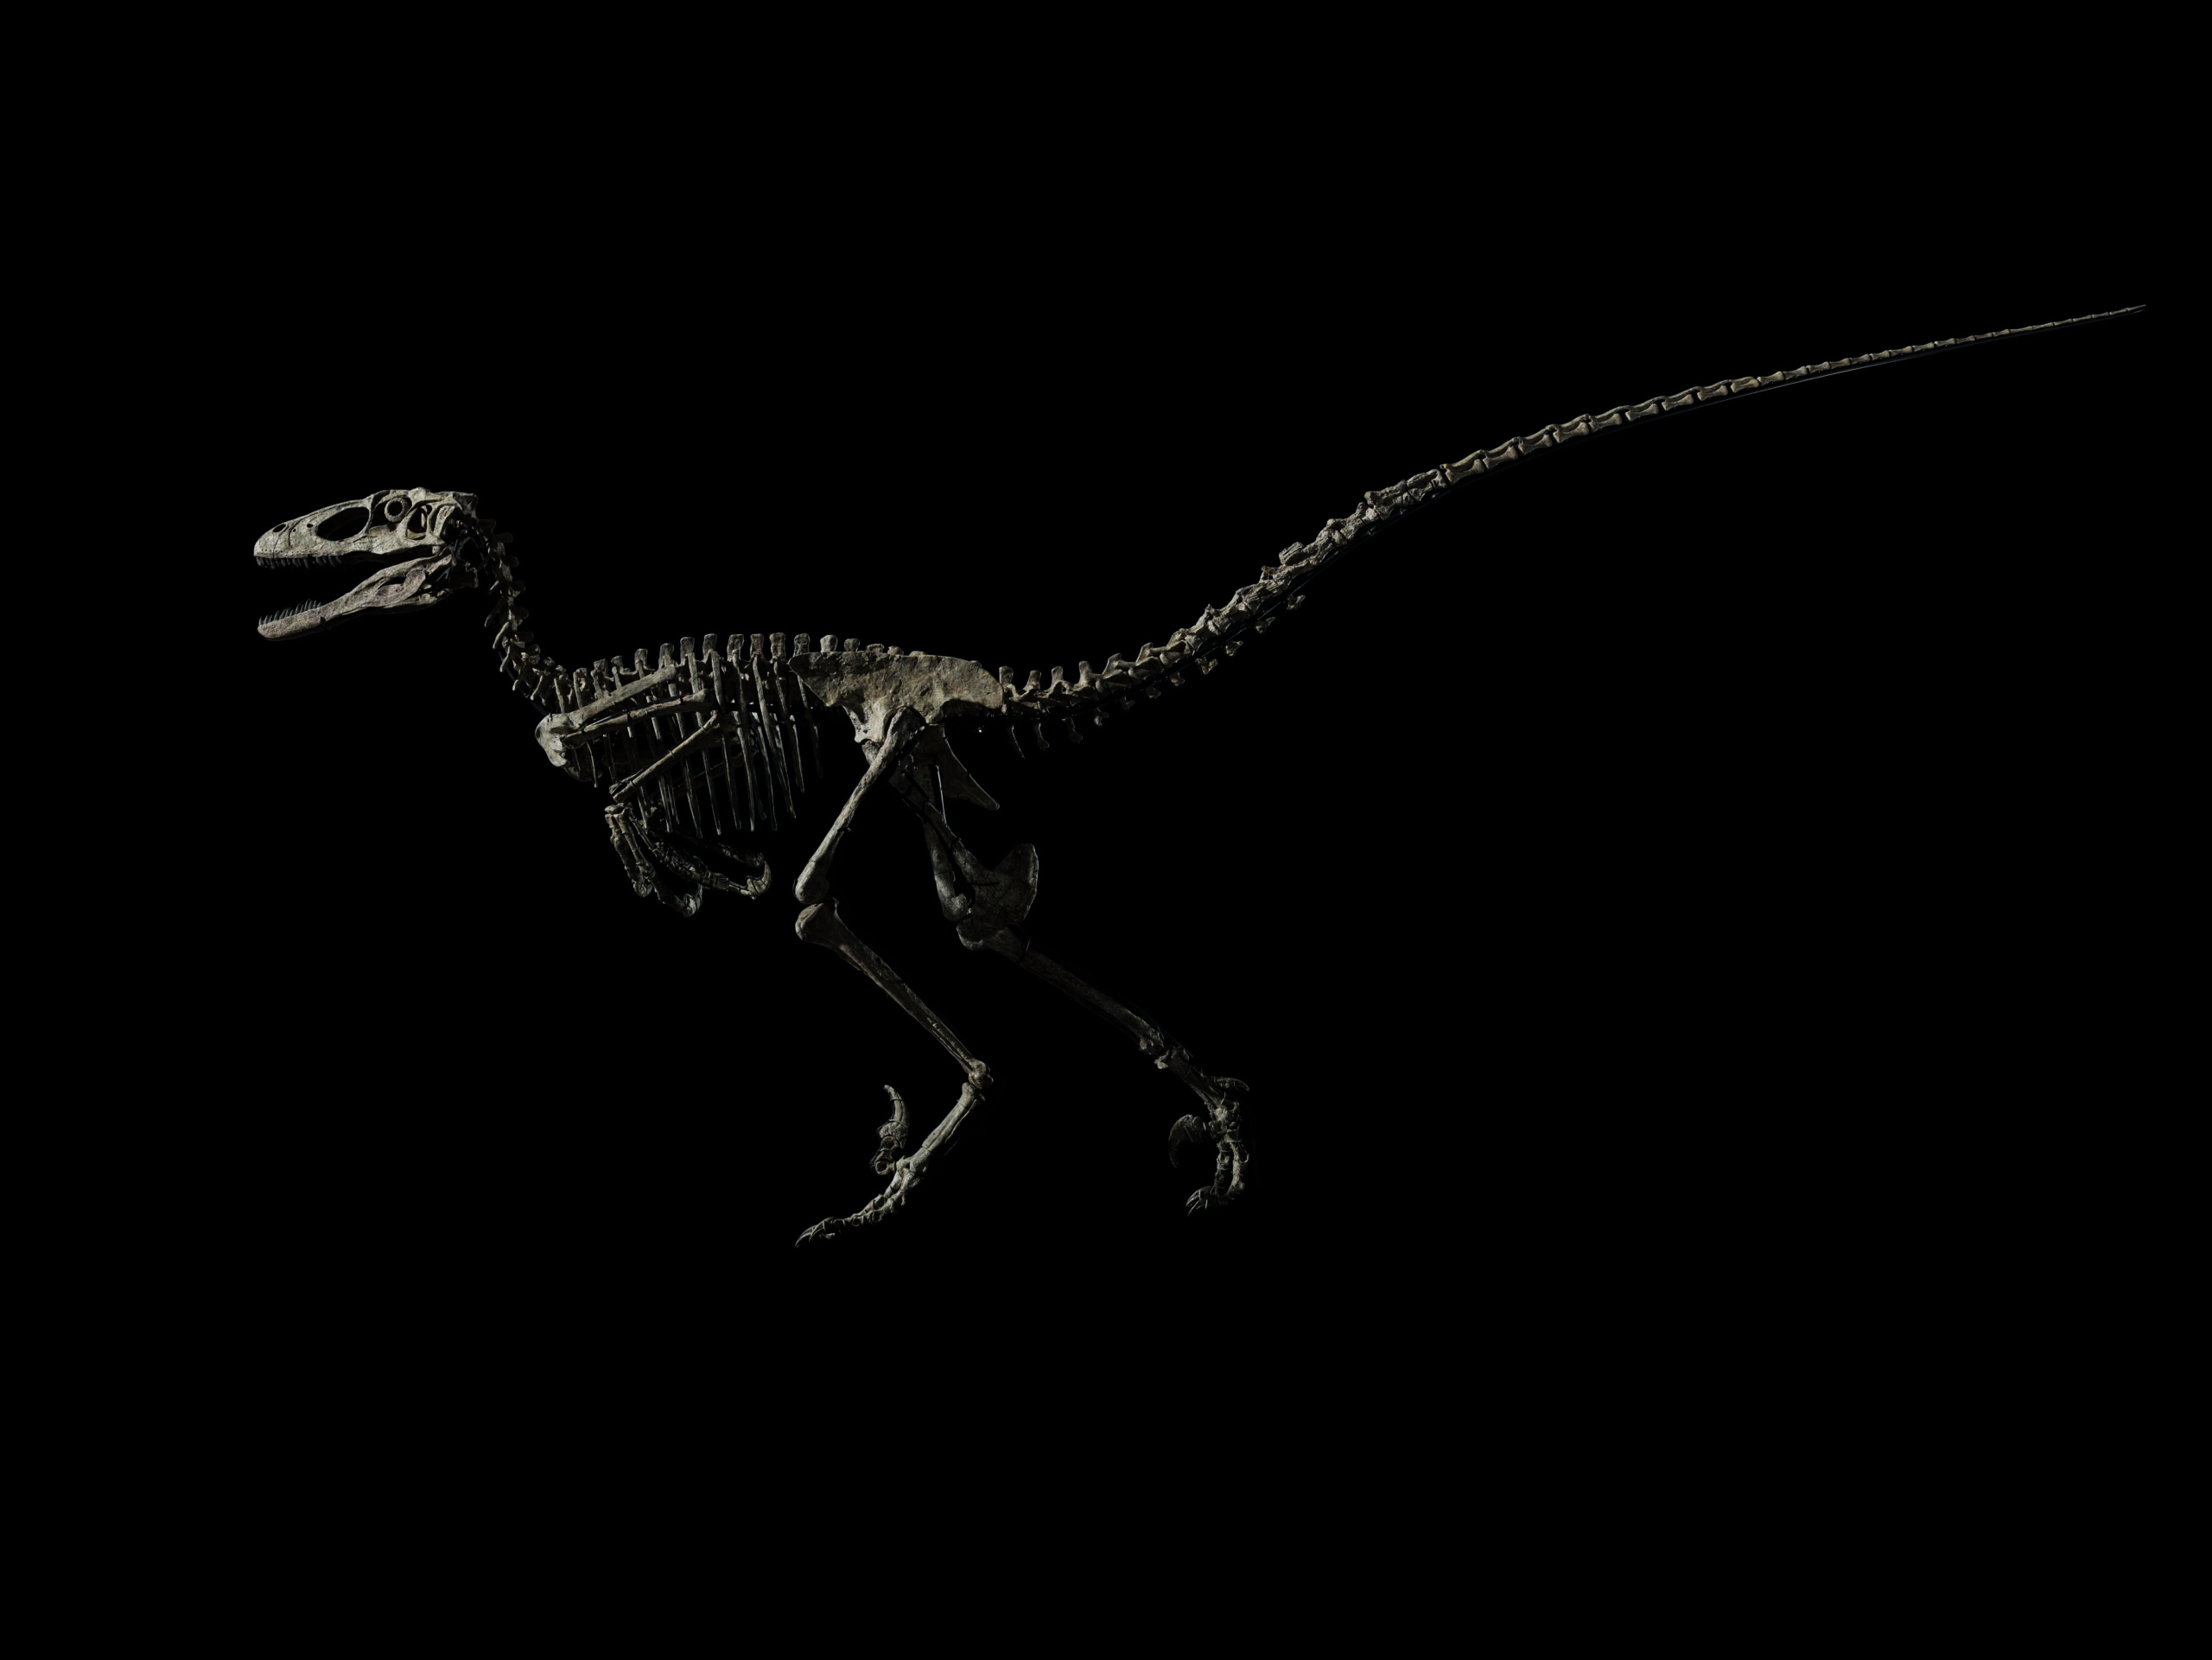 Dal Cretaceo a Christie’s. Un raro esemplare di Velociraptor si presenta all’asta